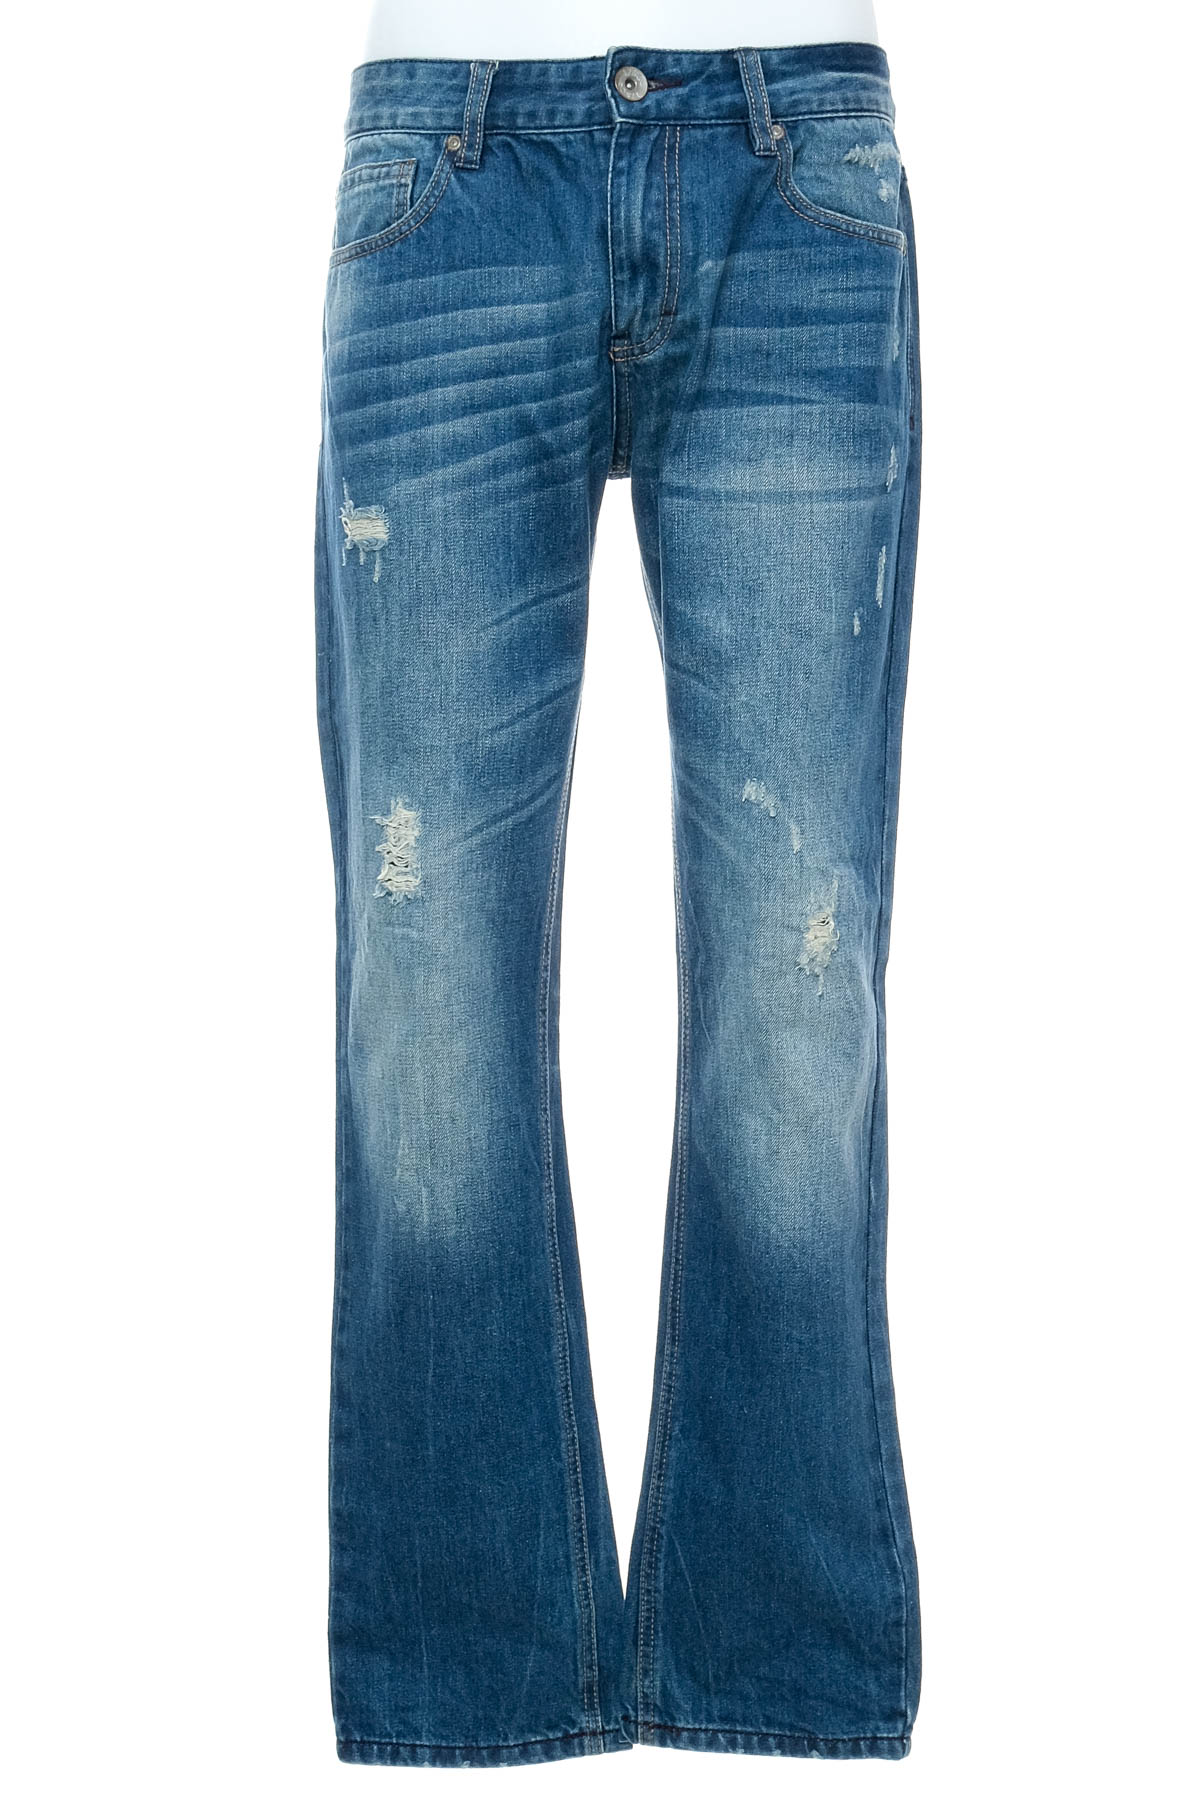 Men's jeans - 17 & Co - 0